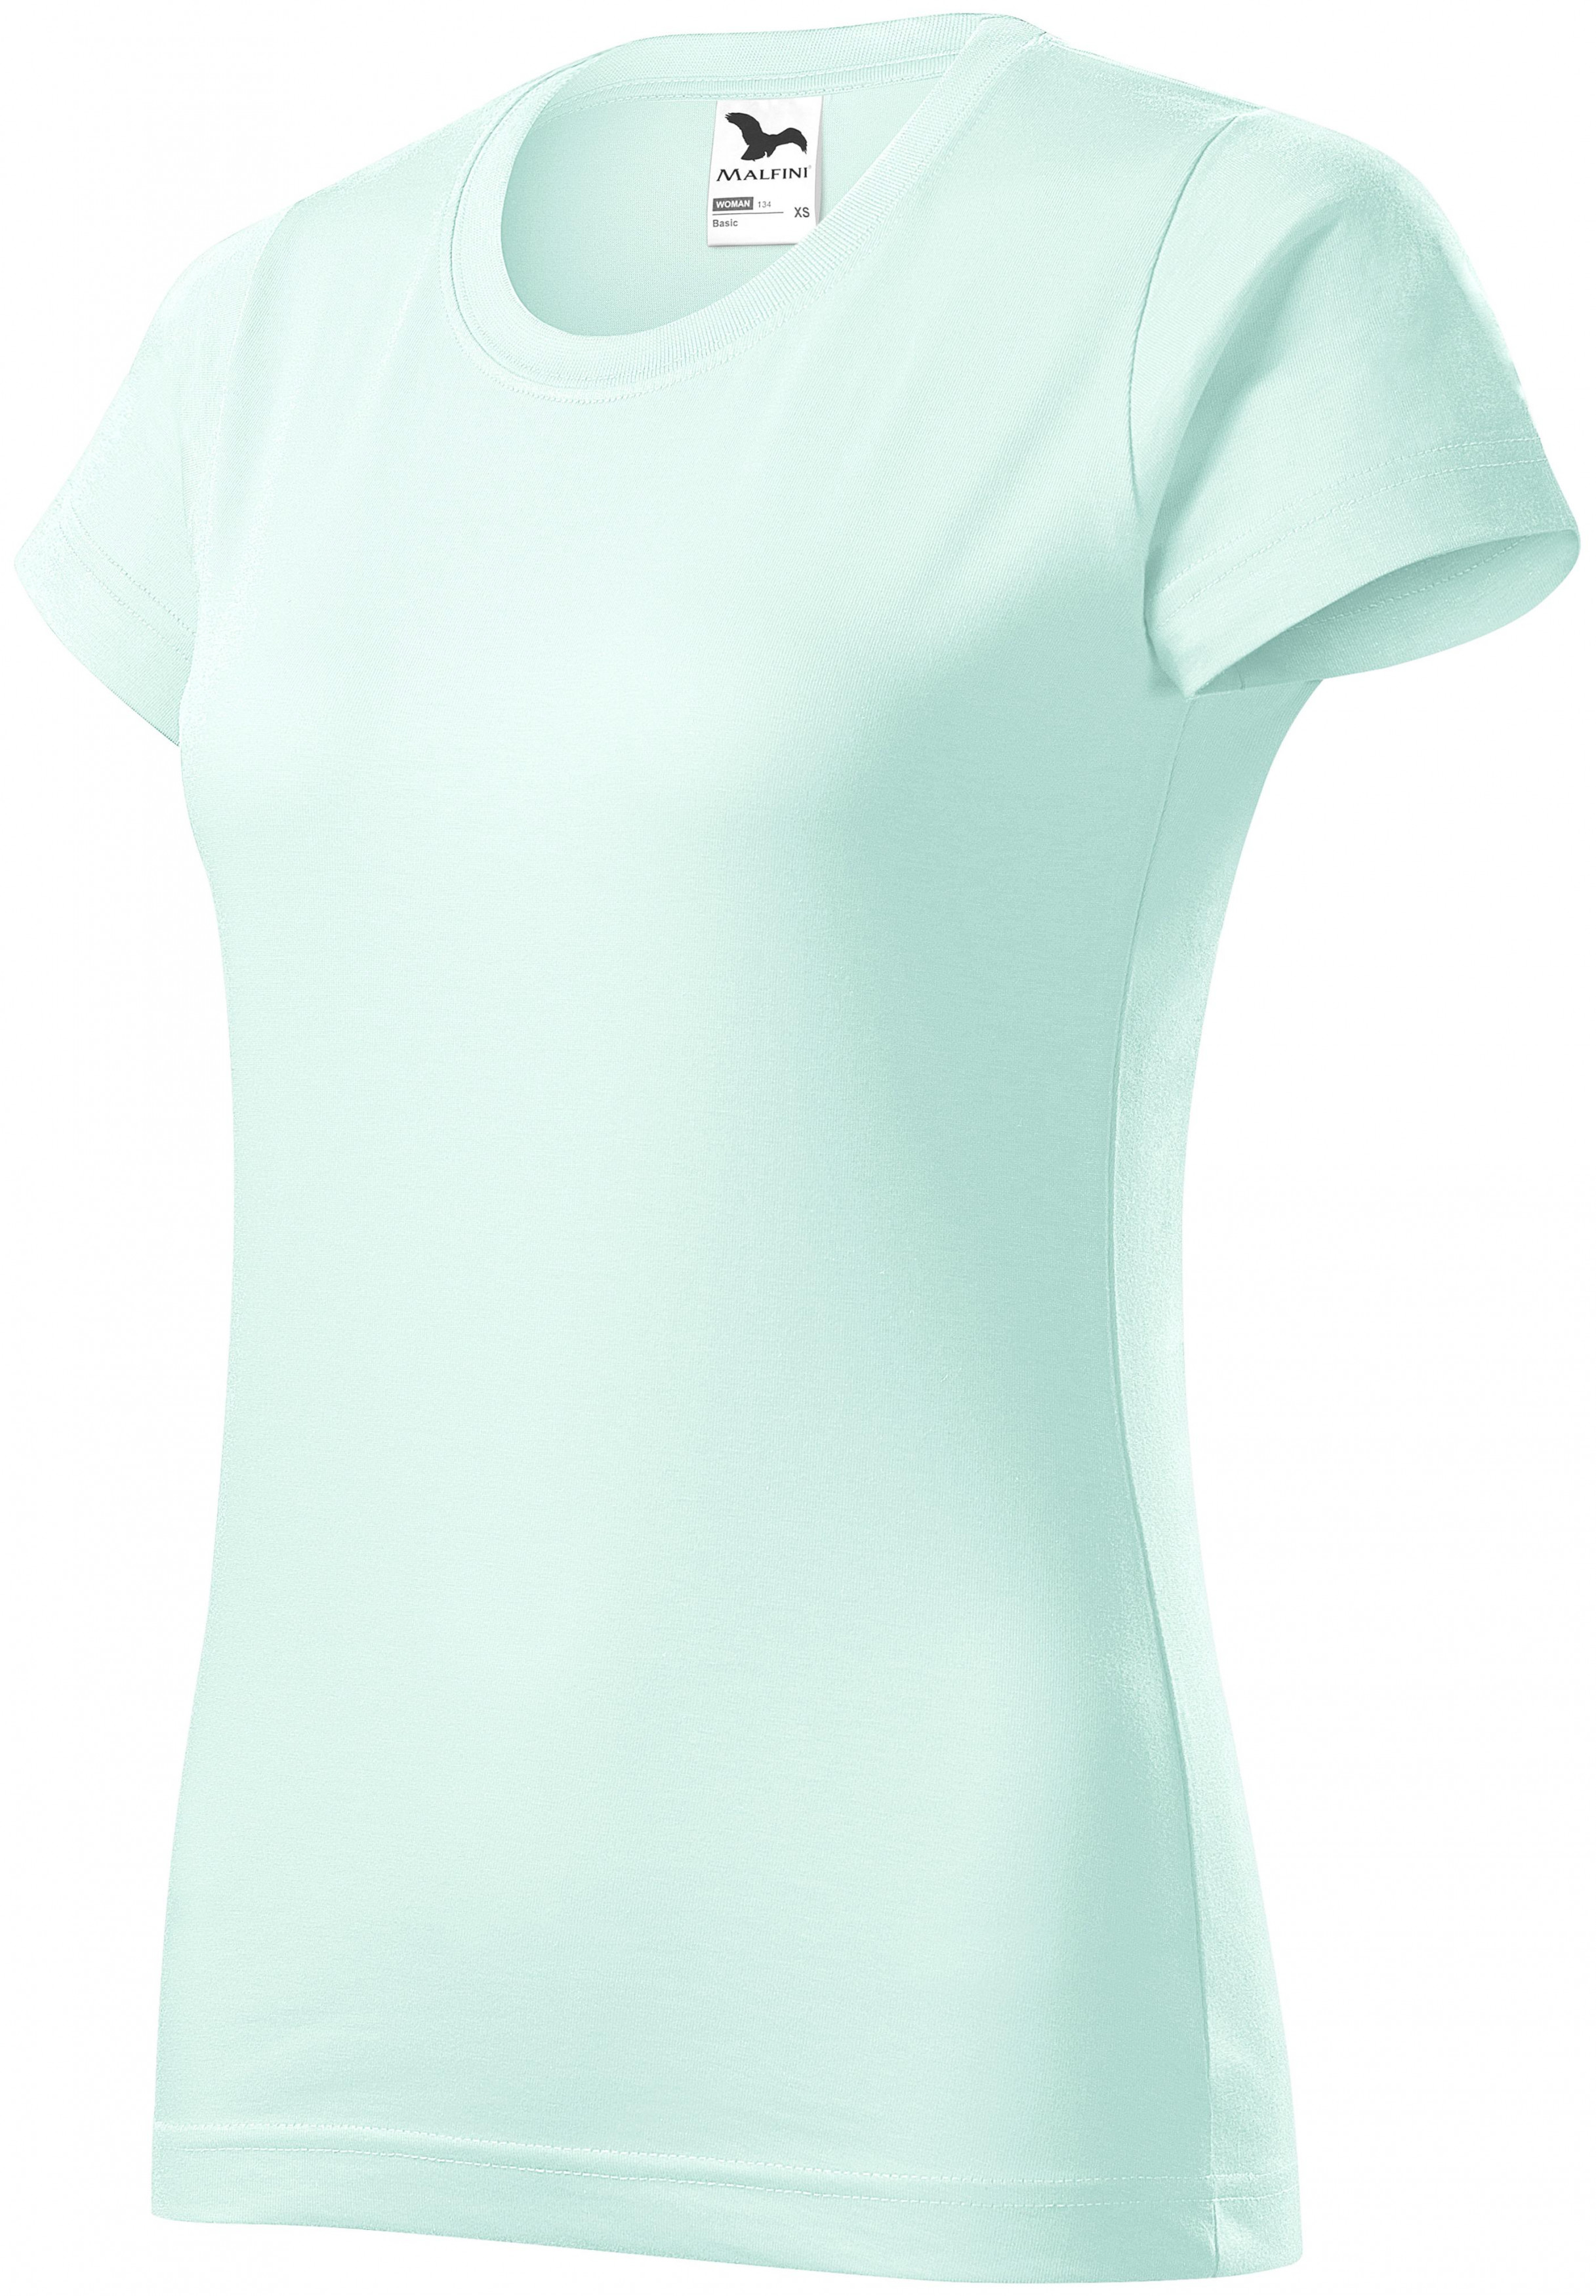 Dámske tričko jednoduché, ľadová zelená, XS